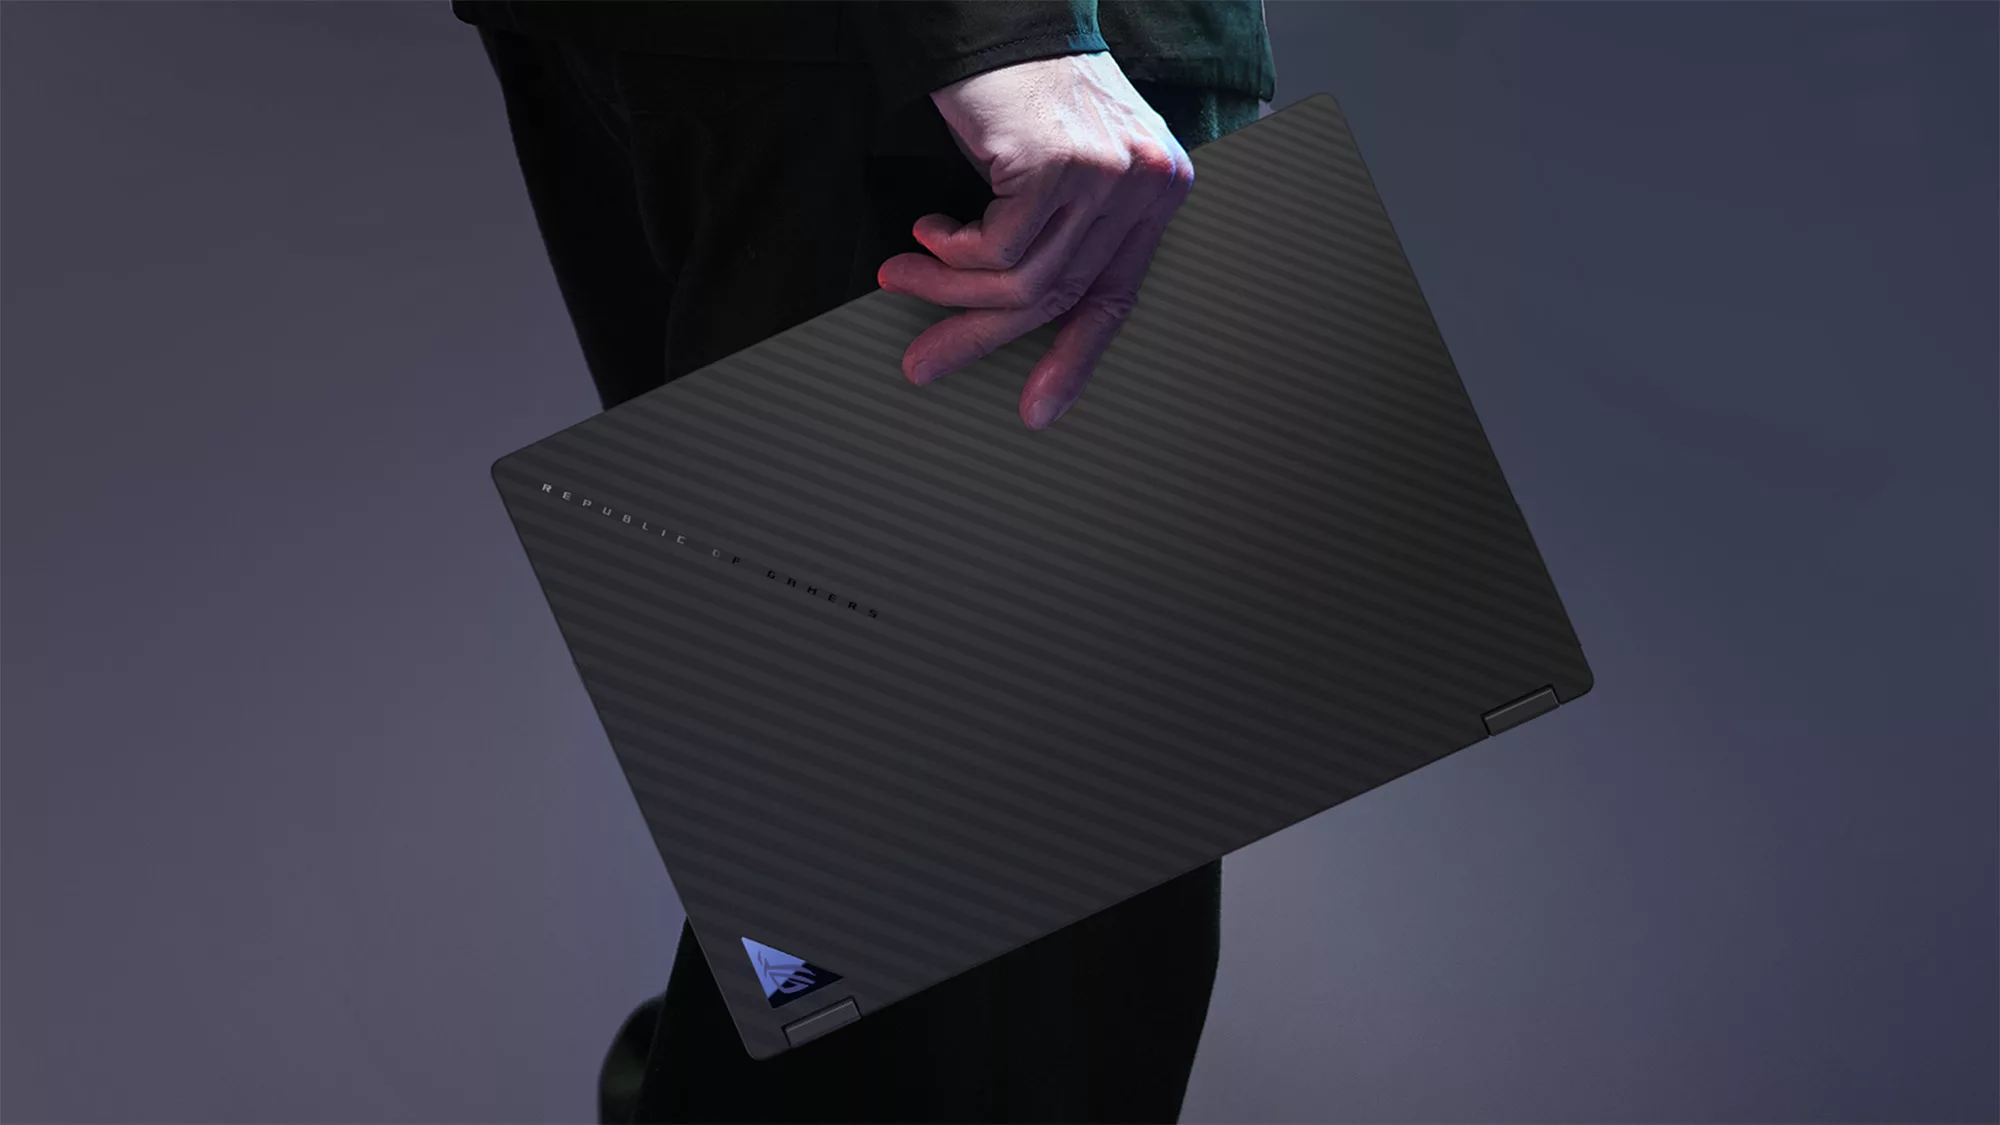 Мужчина стоит и держит в руке закрытый ноутбук ROG Flow X13.